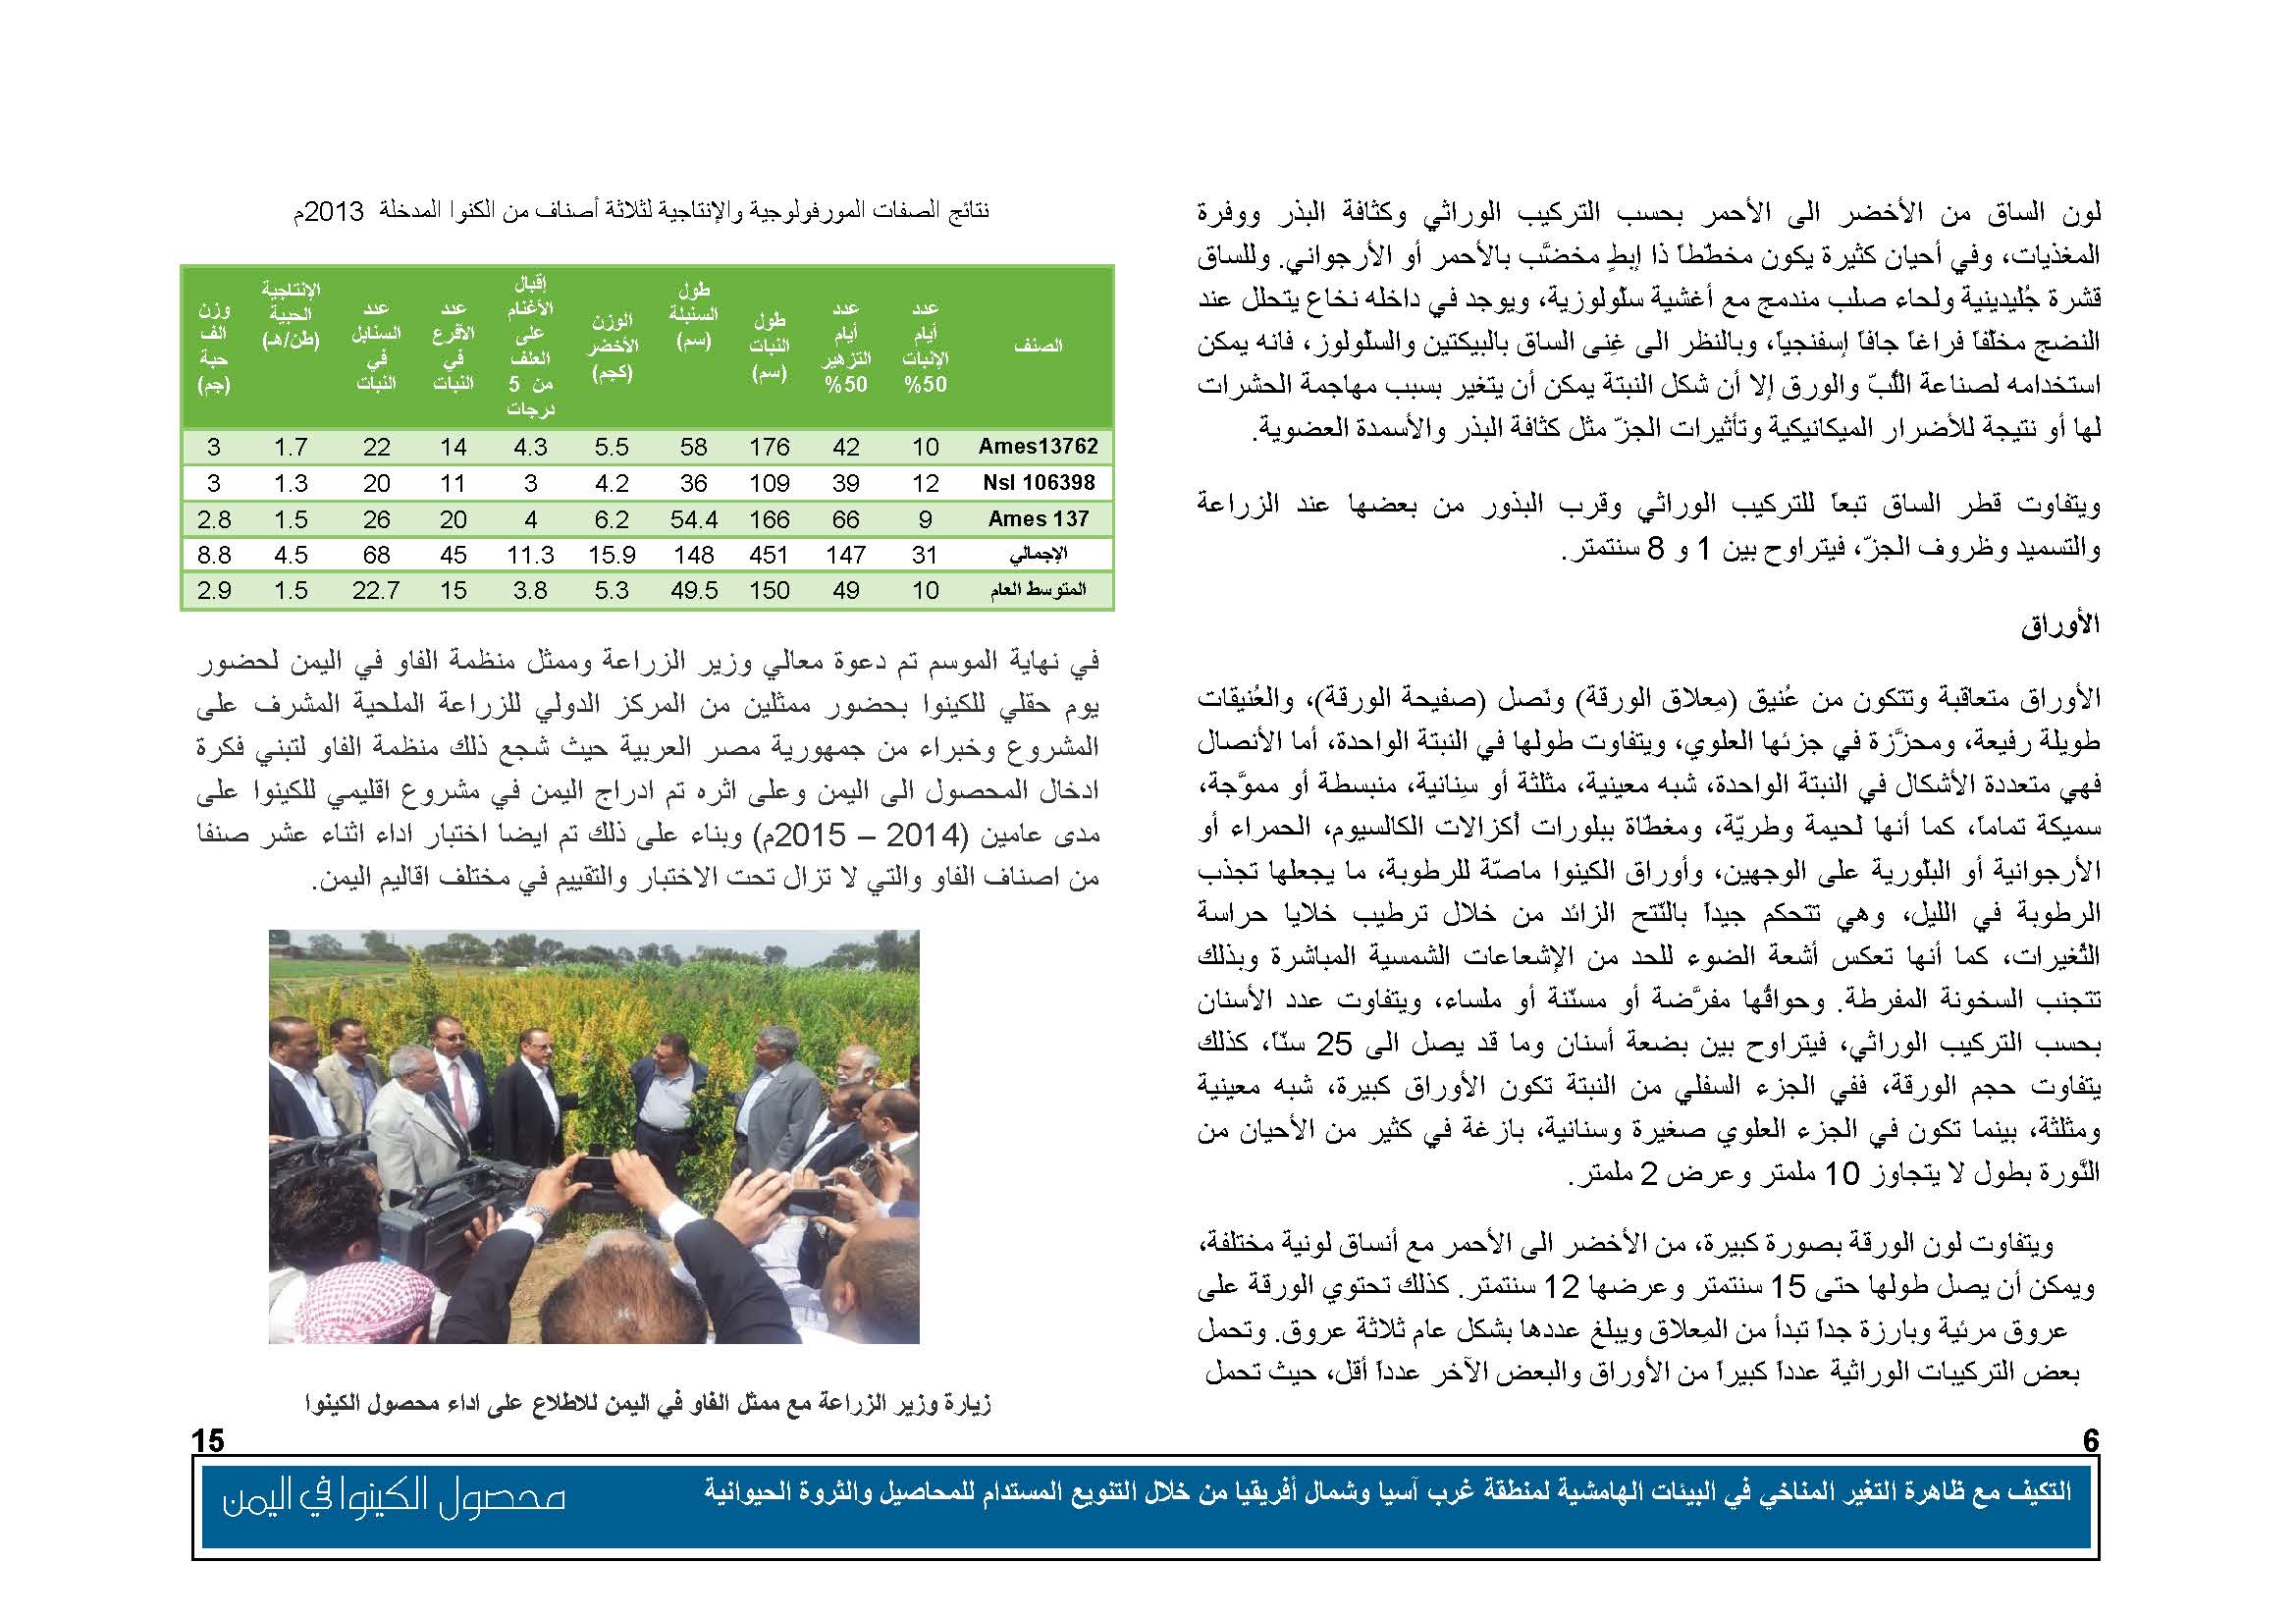 محصول الكينوا في اليمن (1)_Page_07